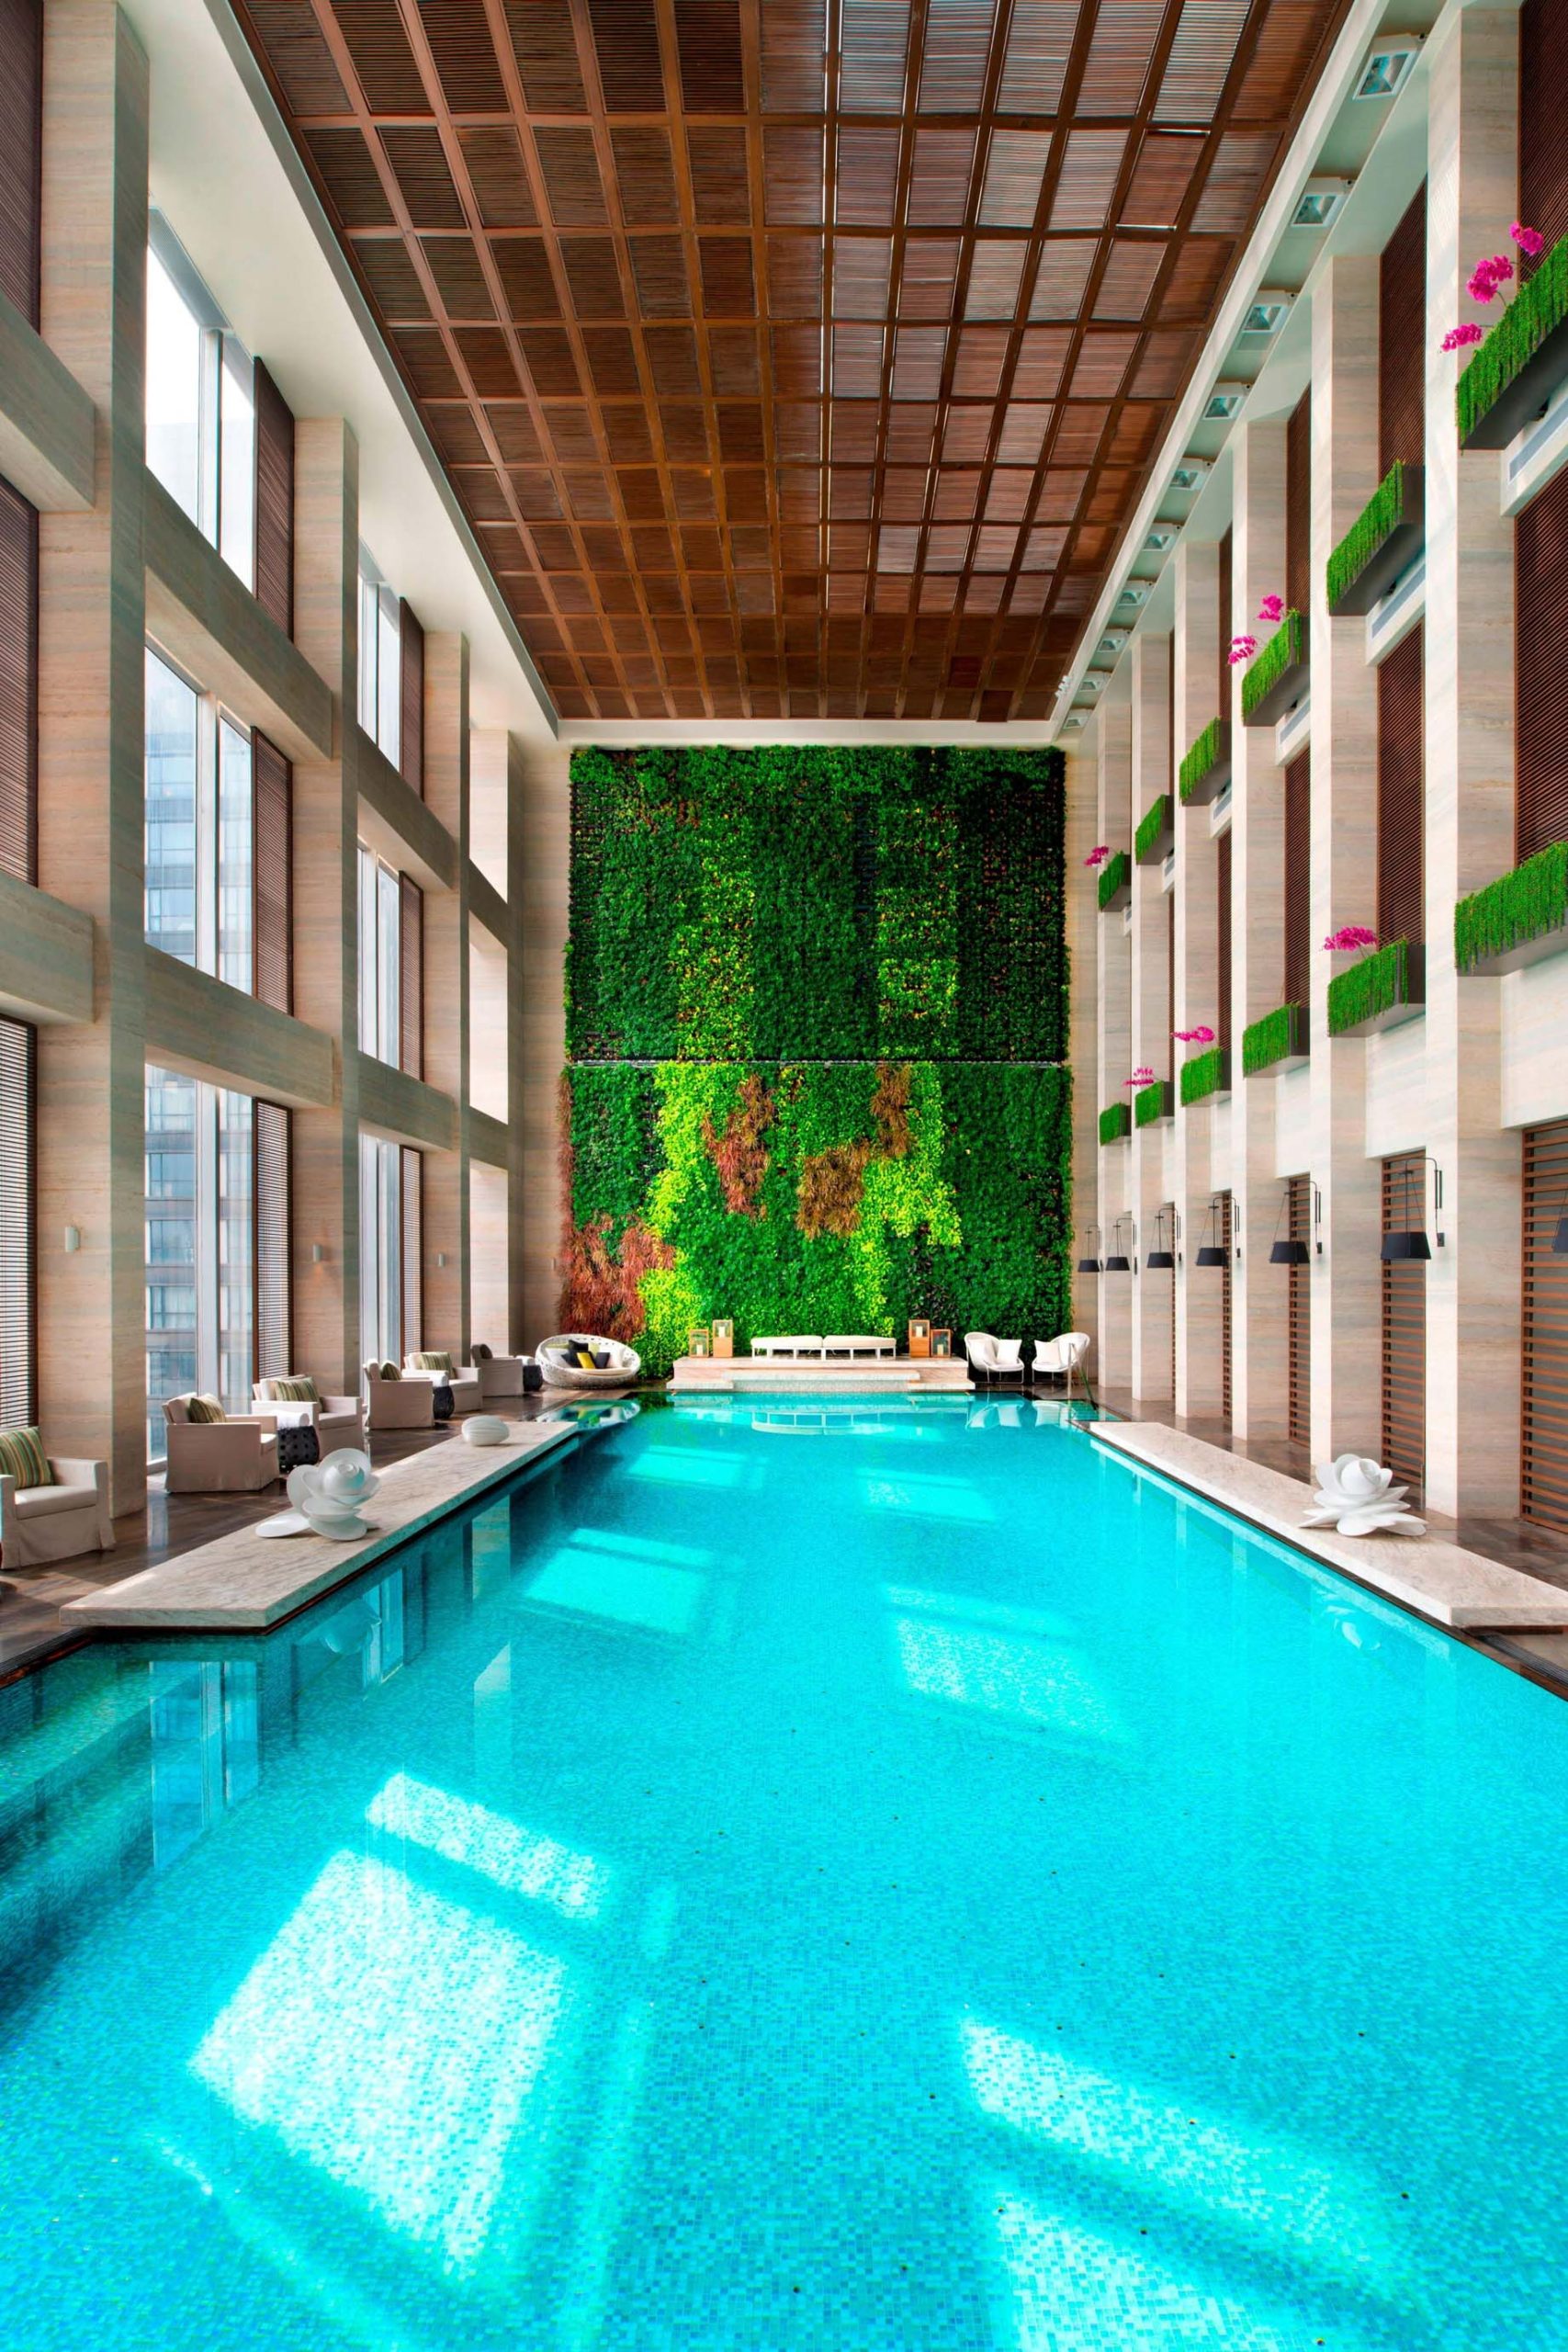 W Guangzhou Hotel - Tianhe District, Guangzhou, China - WET Pool